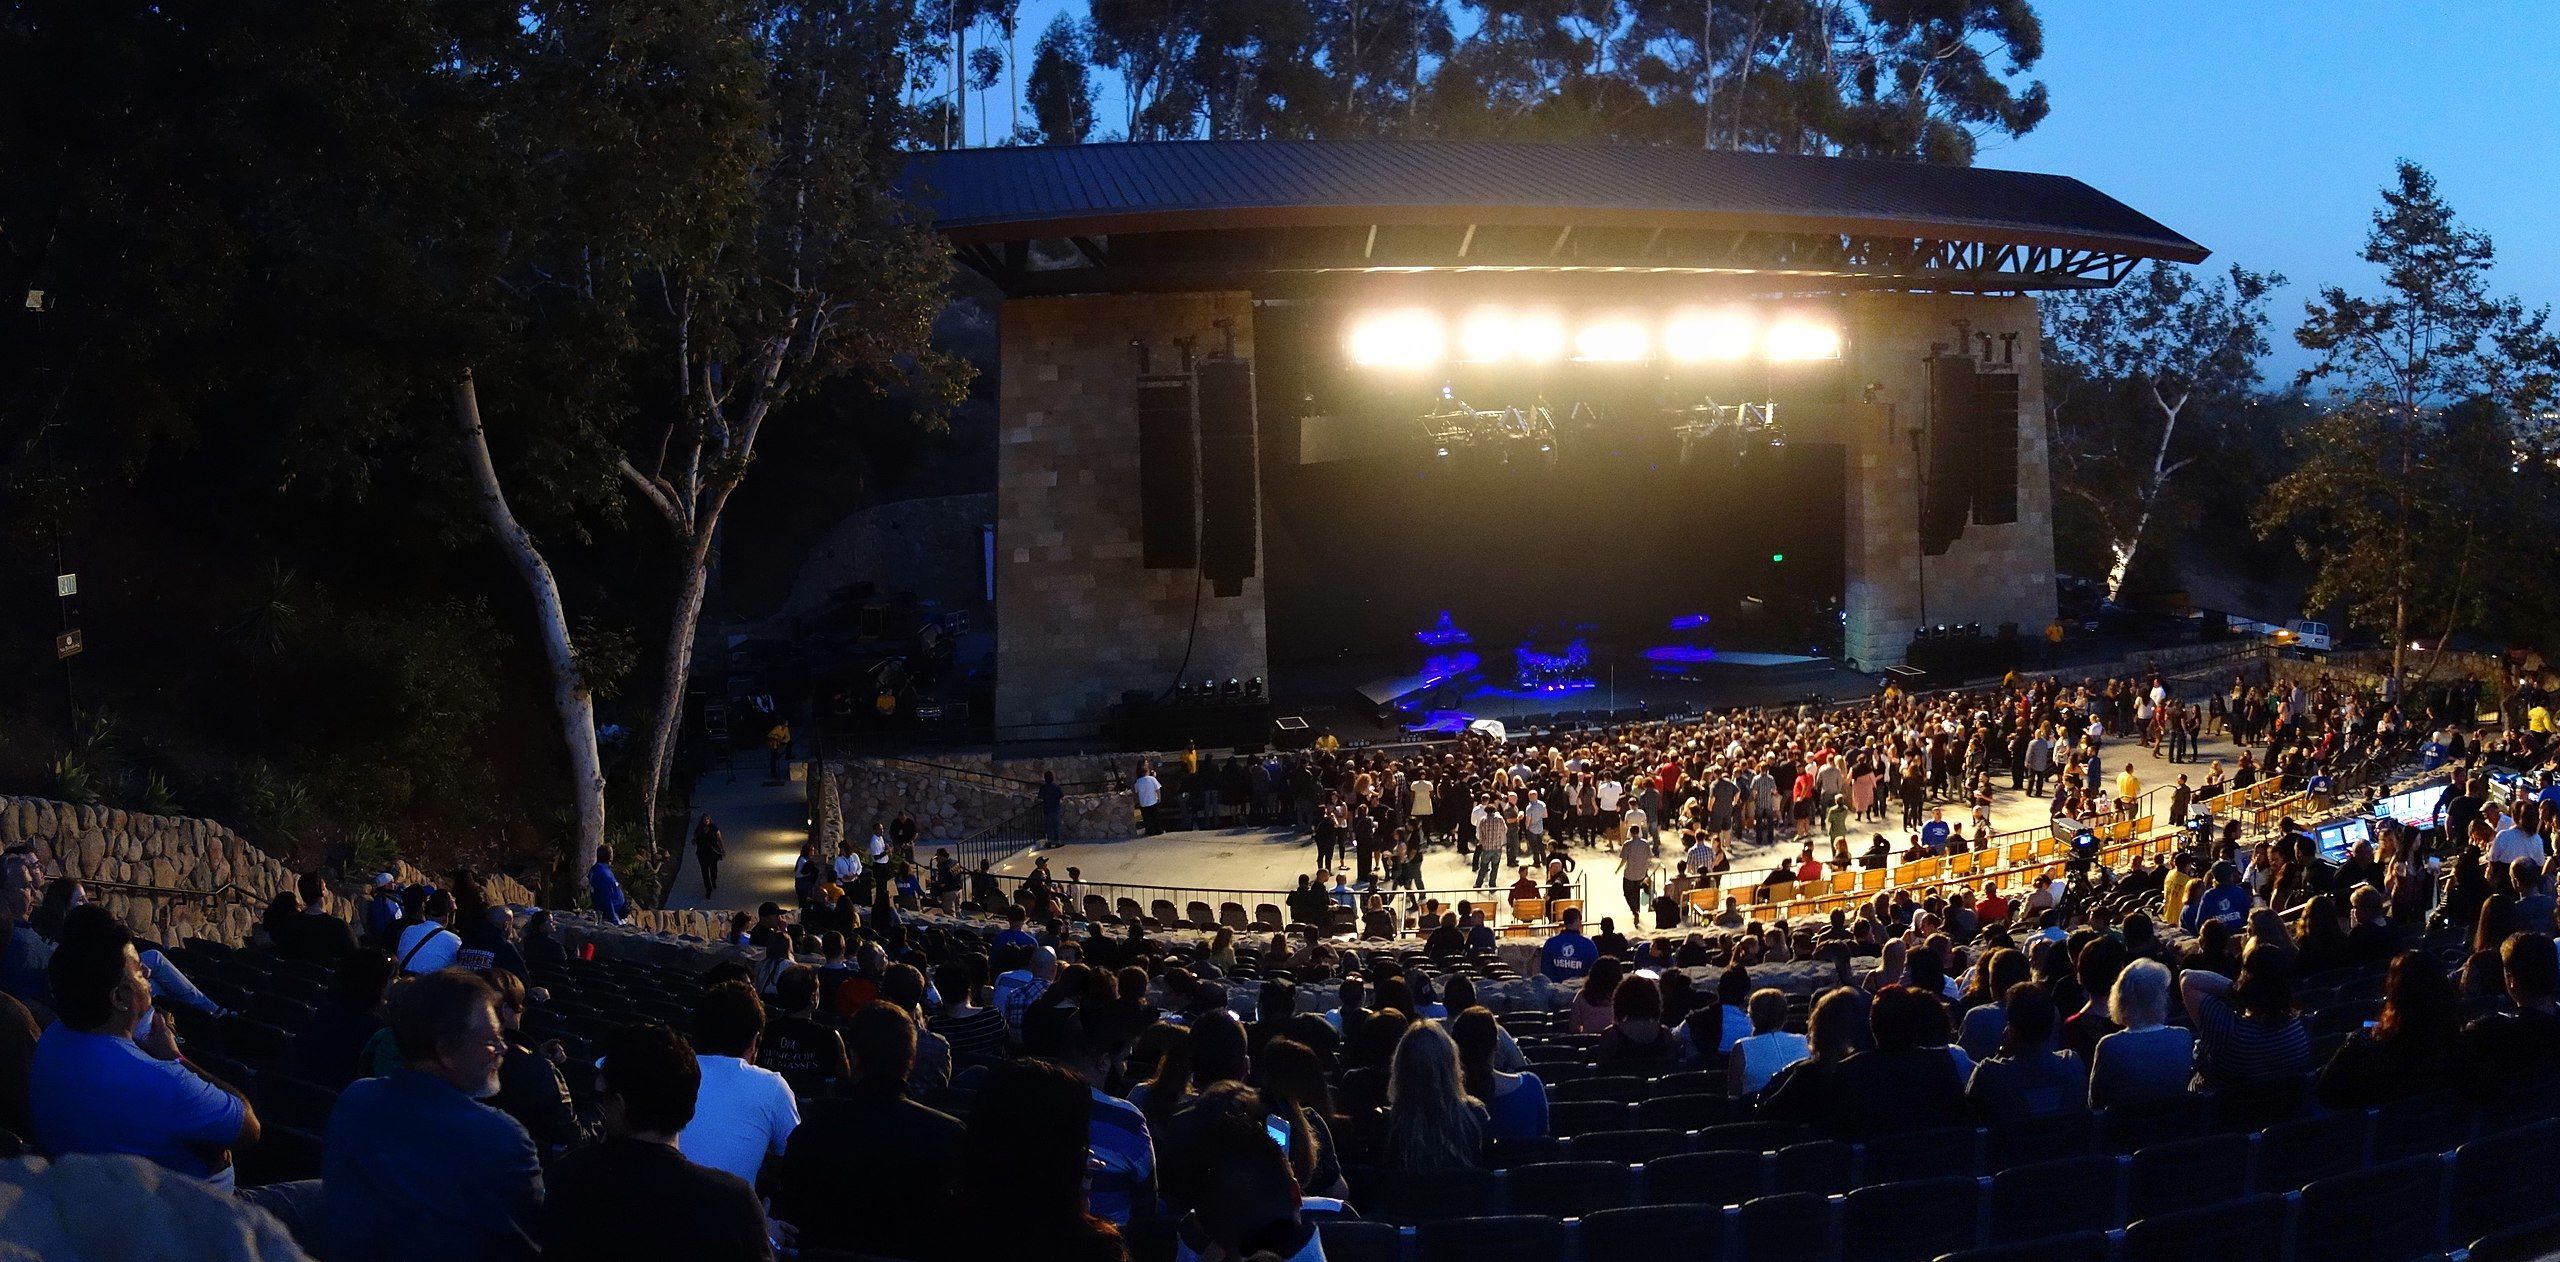 A night concert at the open air Santa Barbara Bowl.